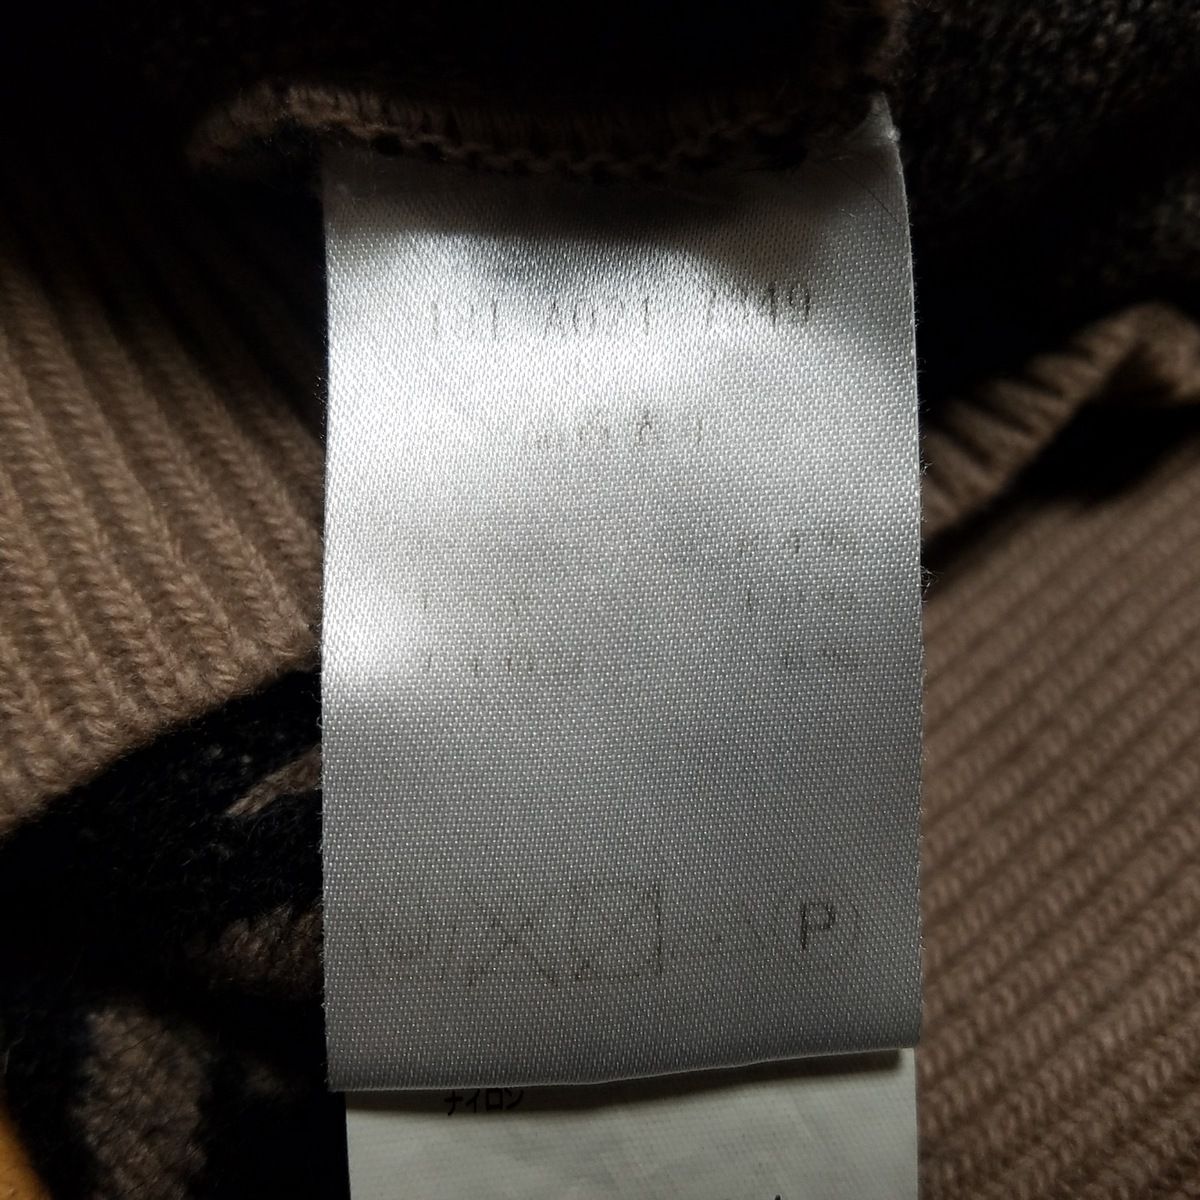 N゜21(ヌメロ ヴェントゥーノ) 長袖セーター サイズ40 M レディース - パープル×ベージュ×マルチ クルーネック - メルカリ